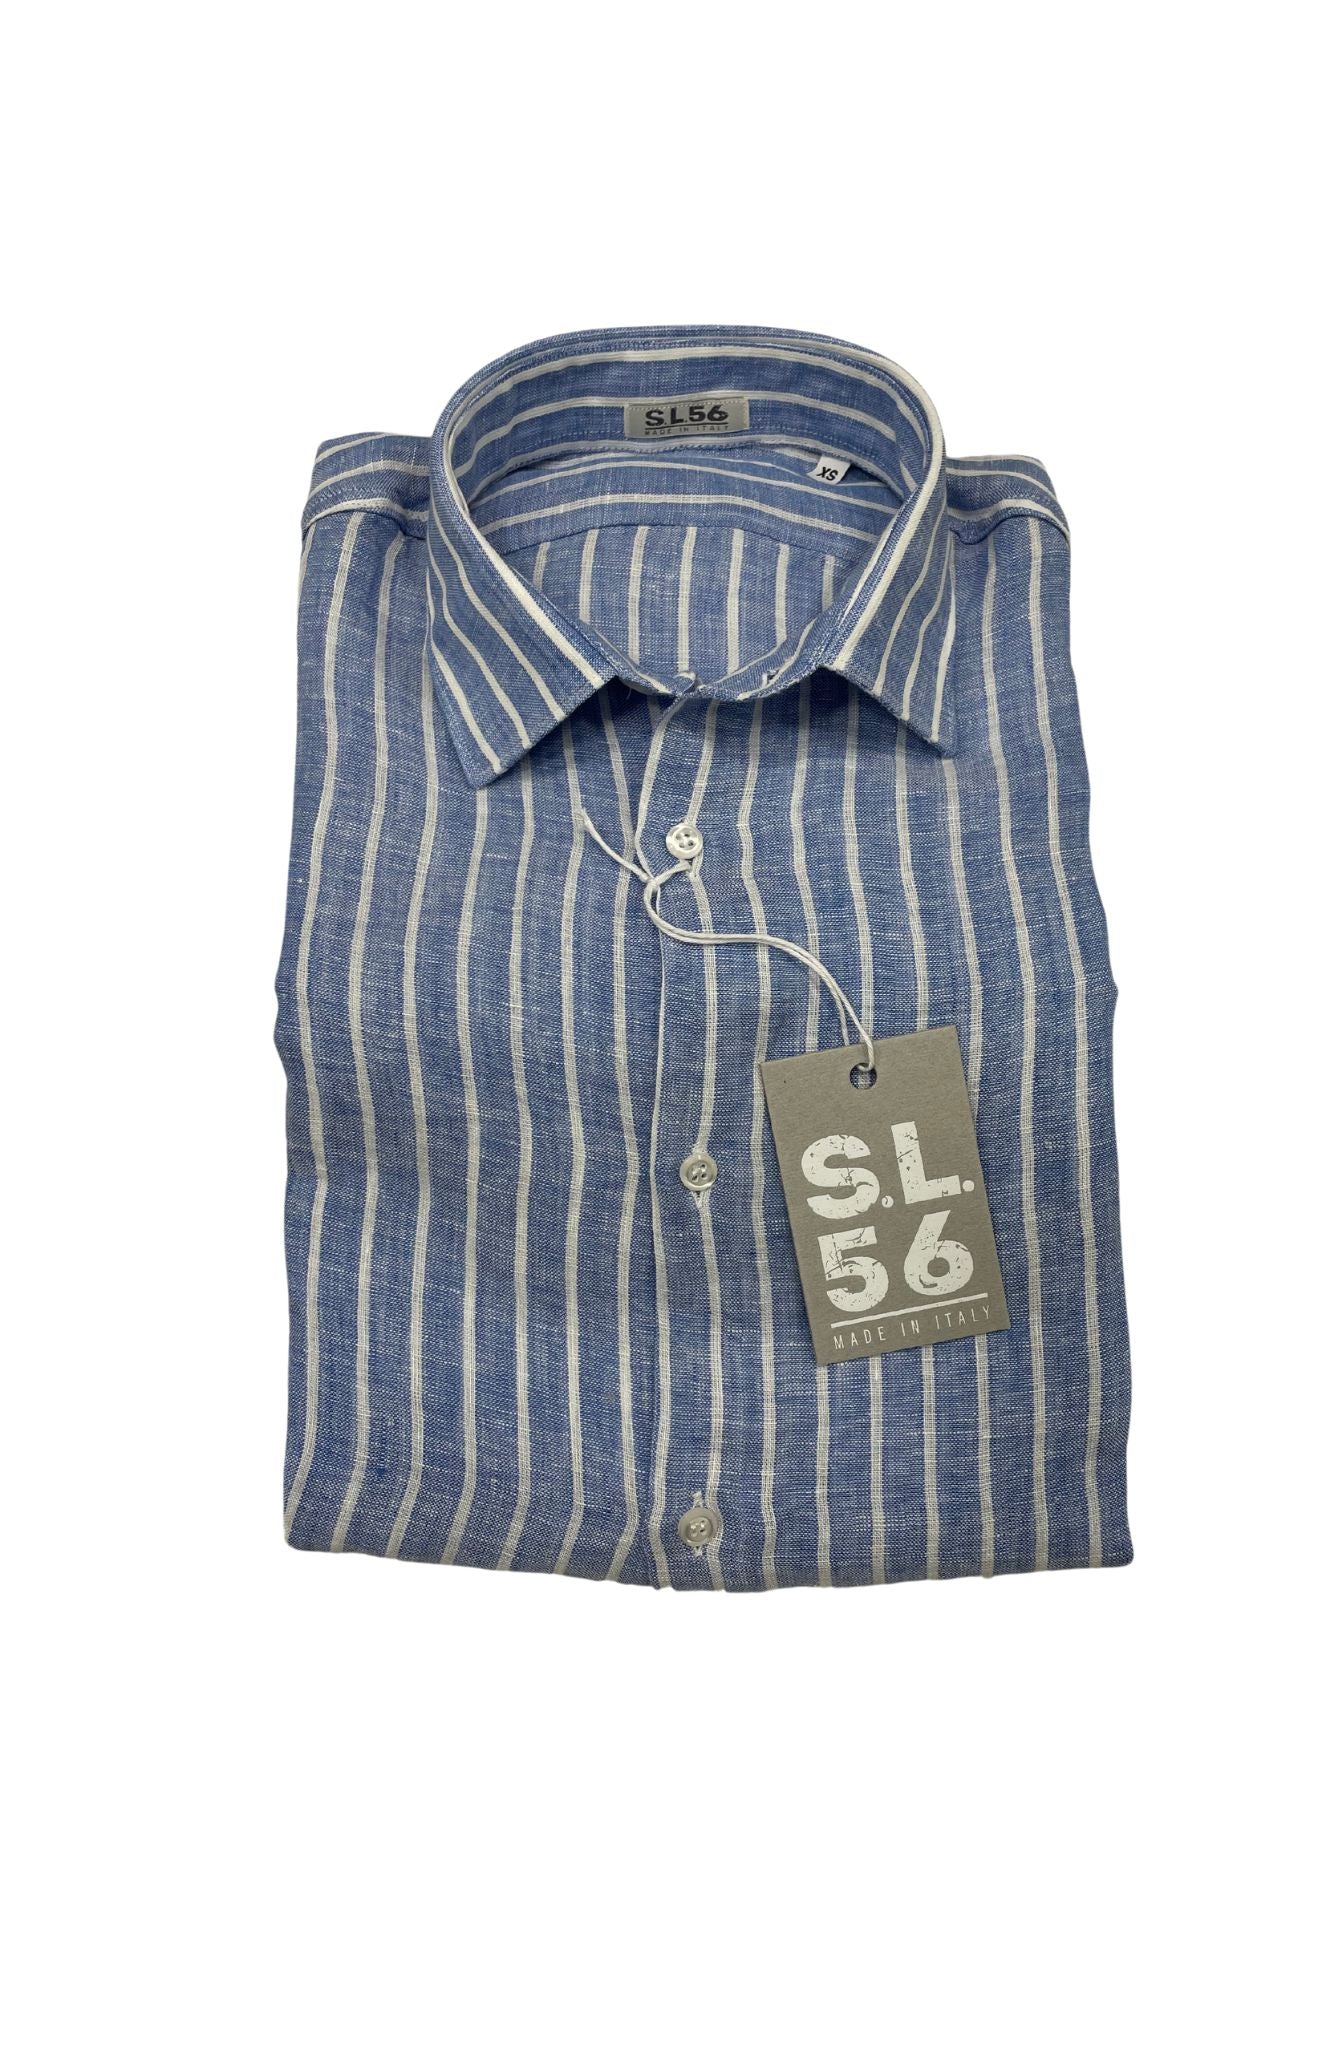 Camicie puro lino righe S.L. 56 made in italy